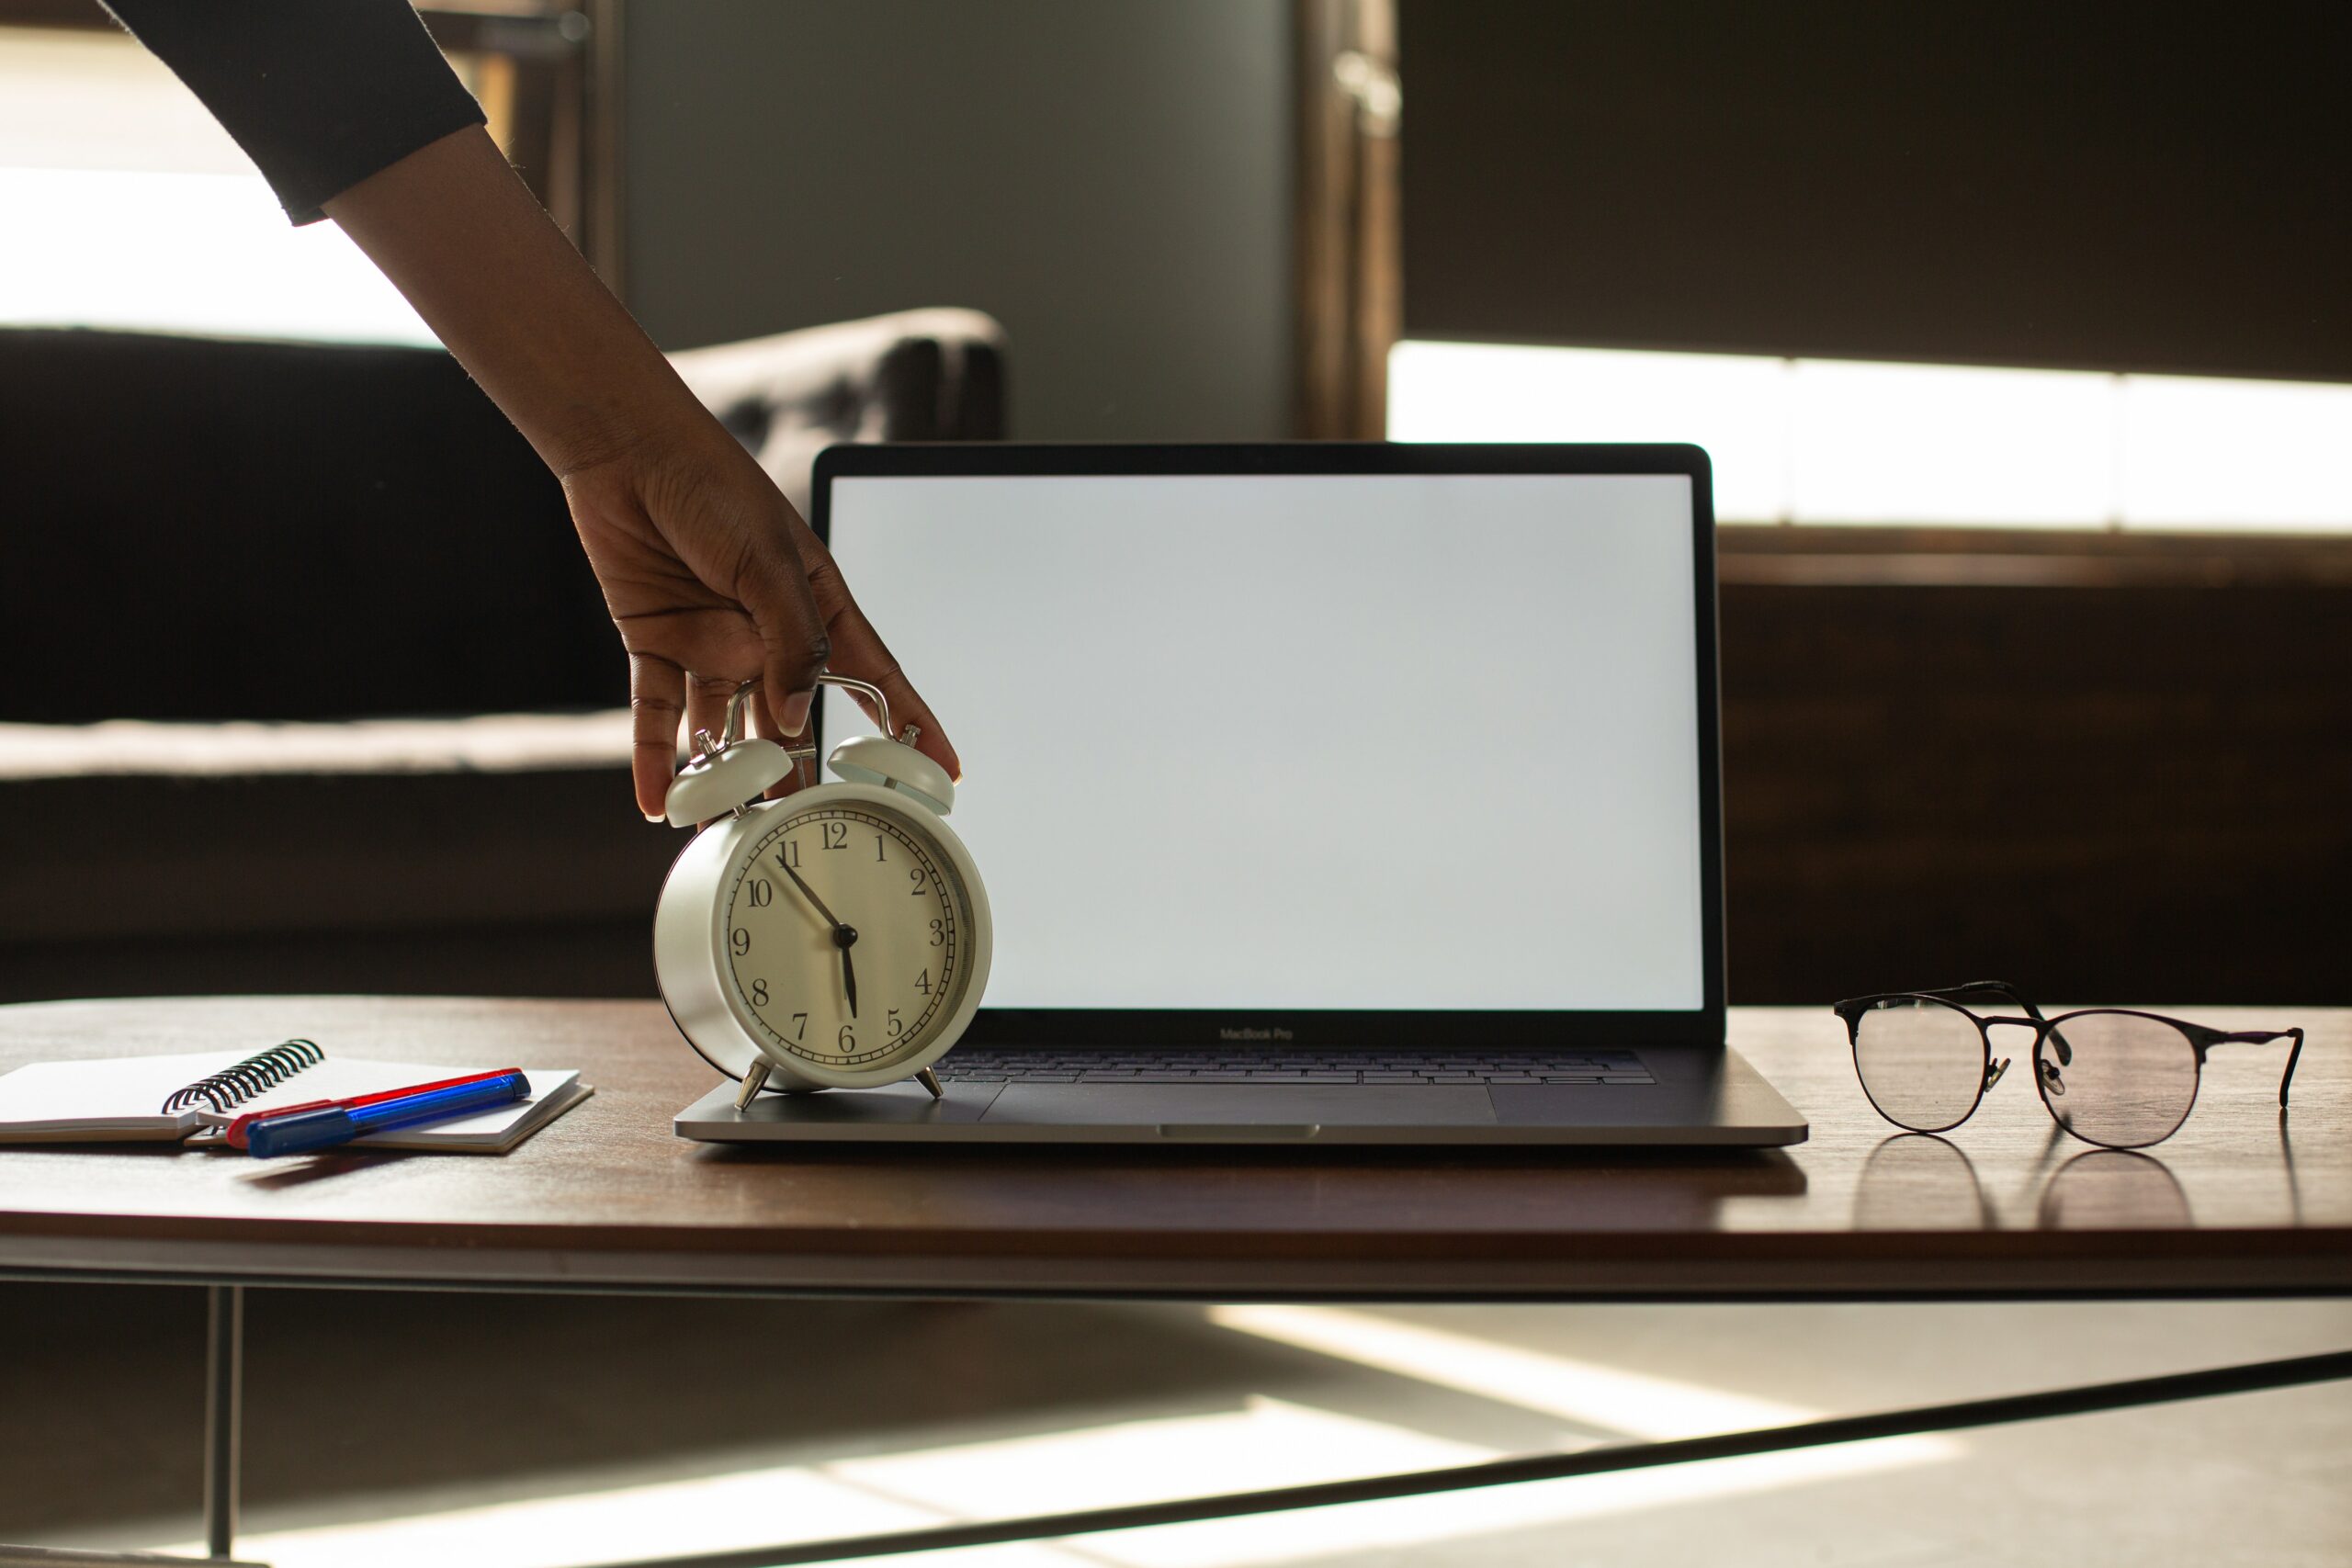 Mão segurando um relógio enfrente a um notebook em ambiente de trabalho, representando o calculo da DSR sobre horas extras.